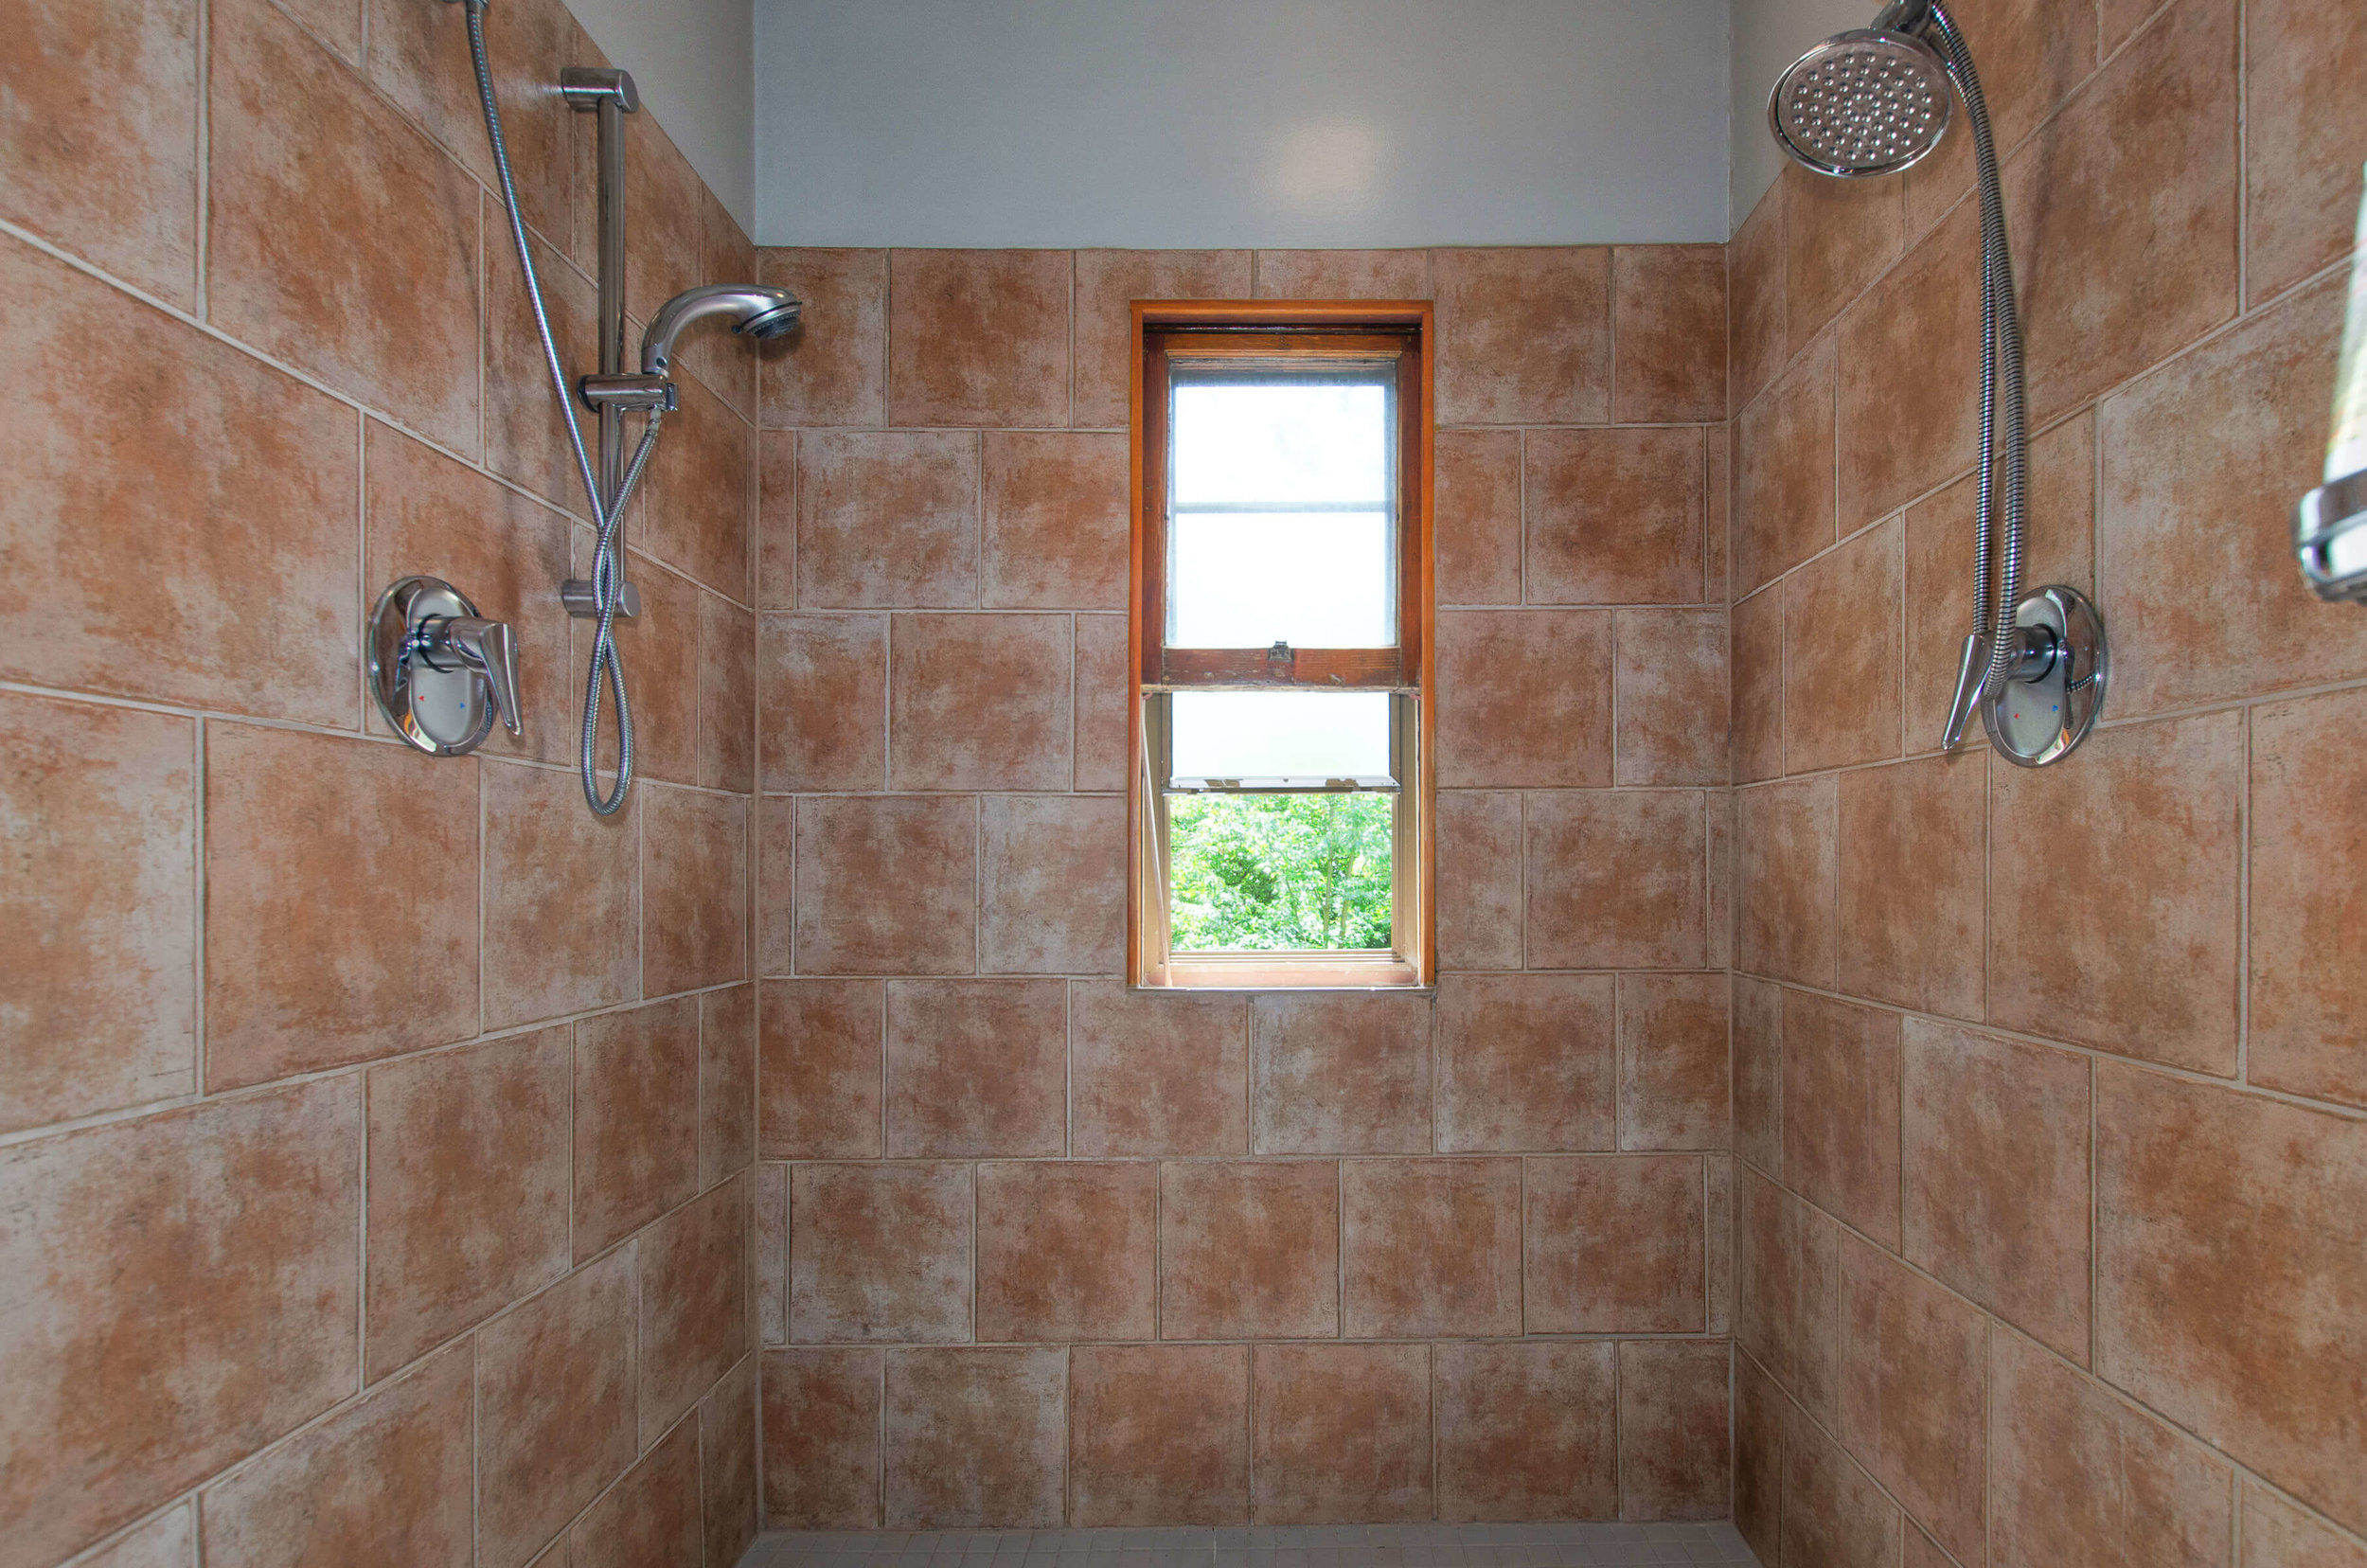 030_Tiled Double-Head Shower.jpg